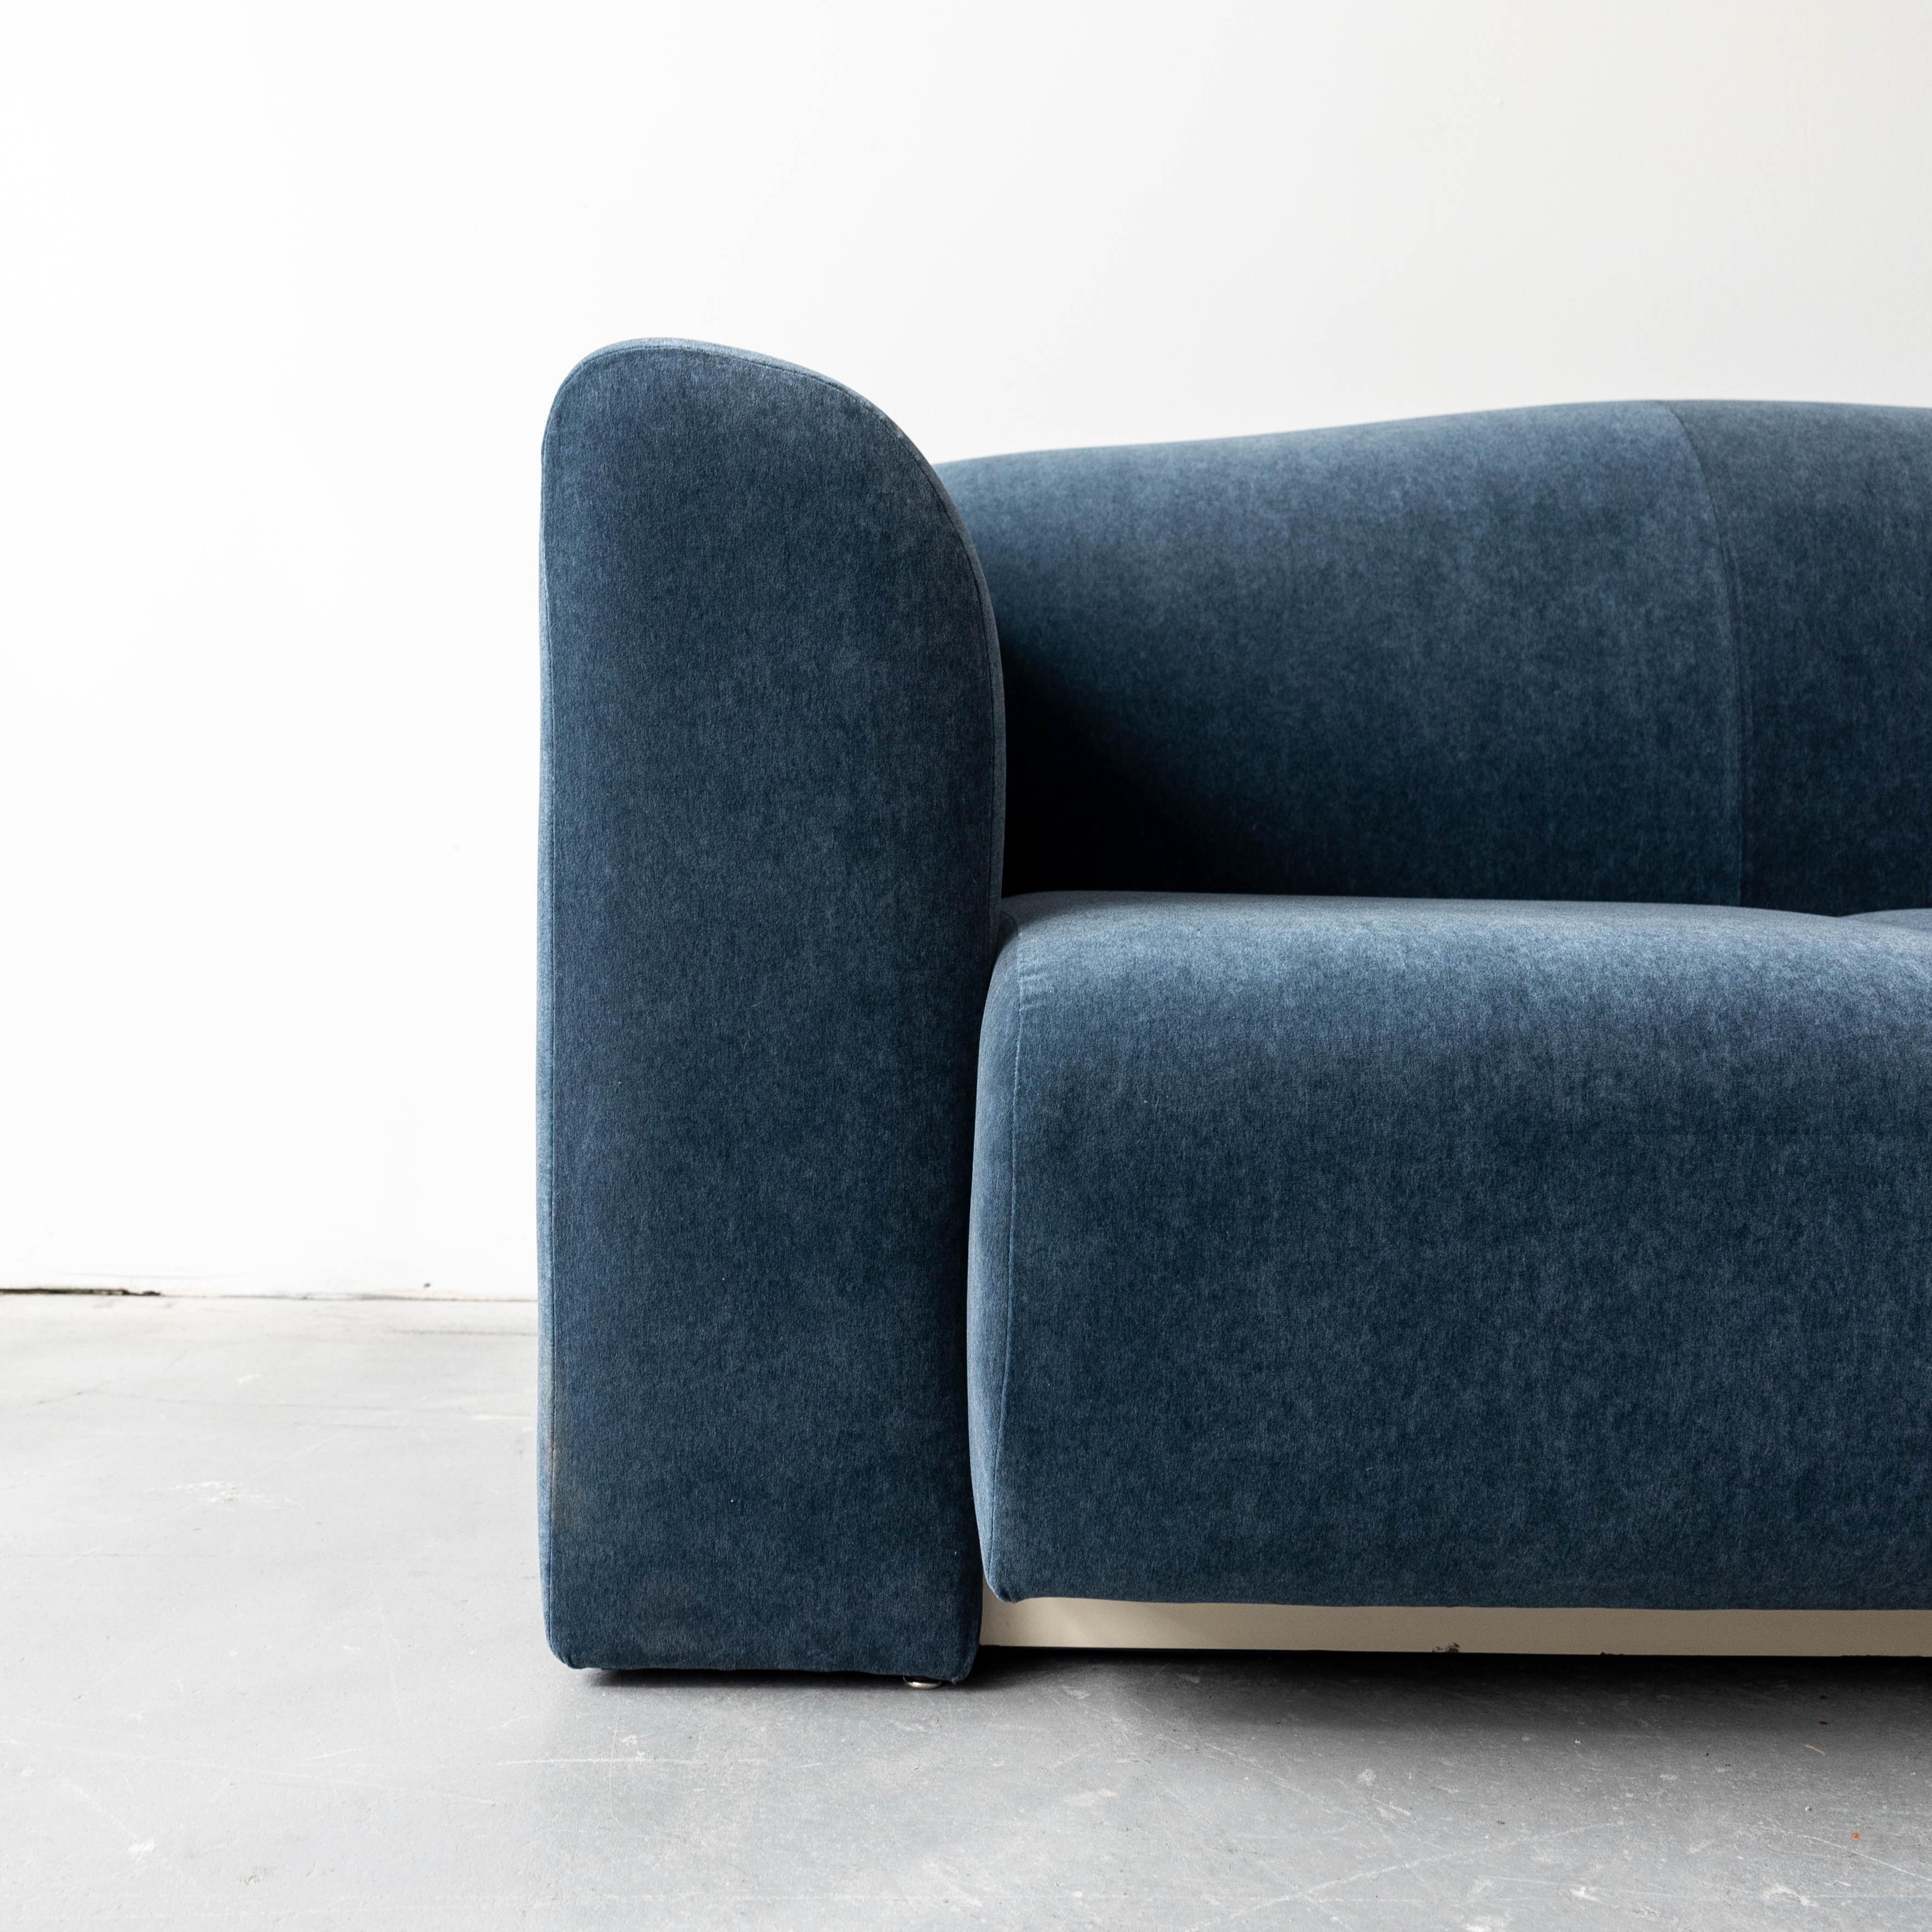 for Brueton c. 1970s - reupholstered in brand new wool velvet from Fishman's Fabrics.